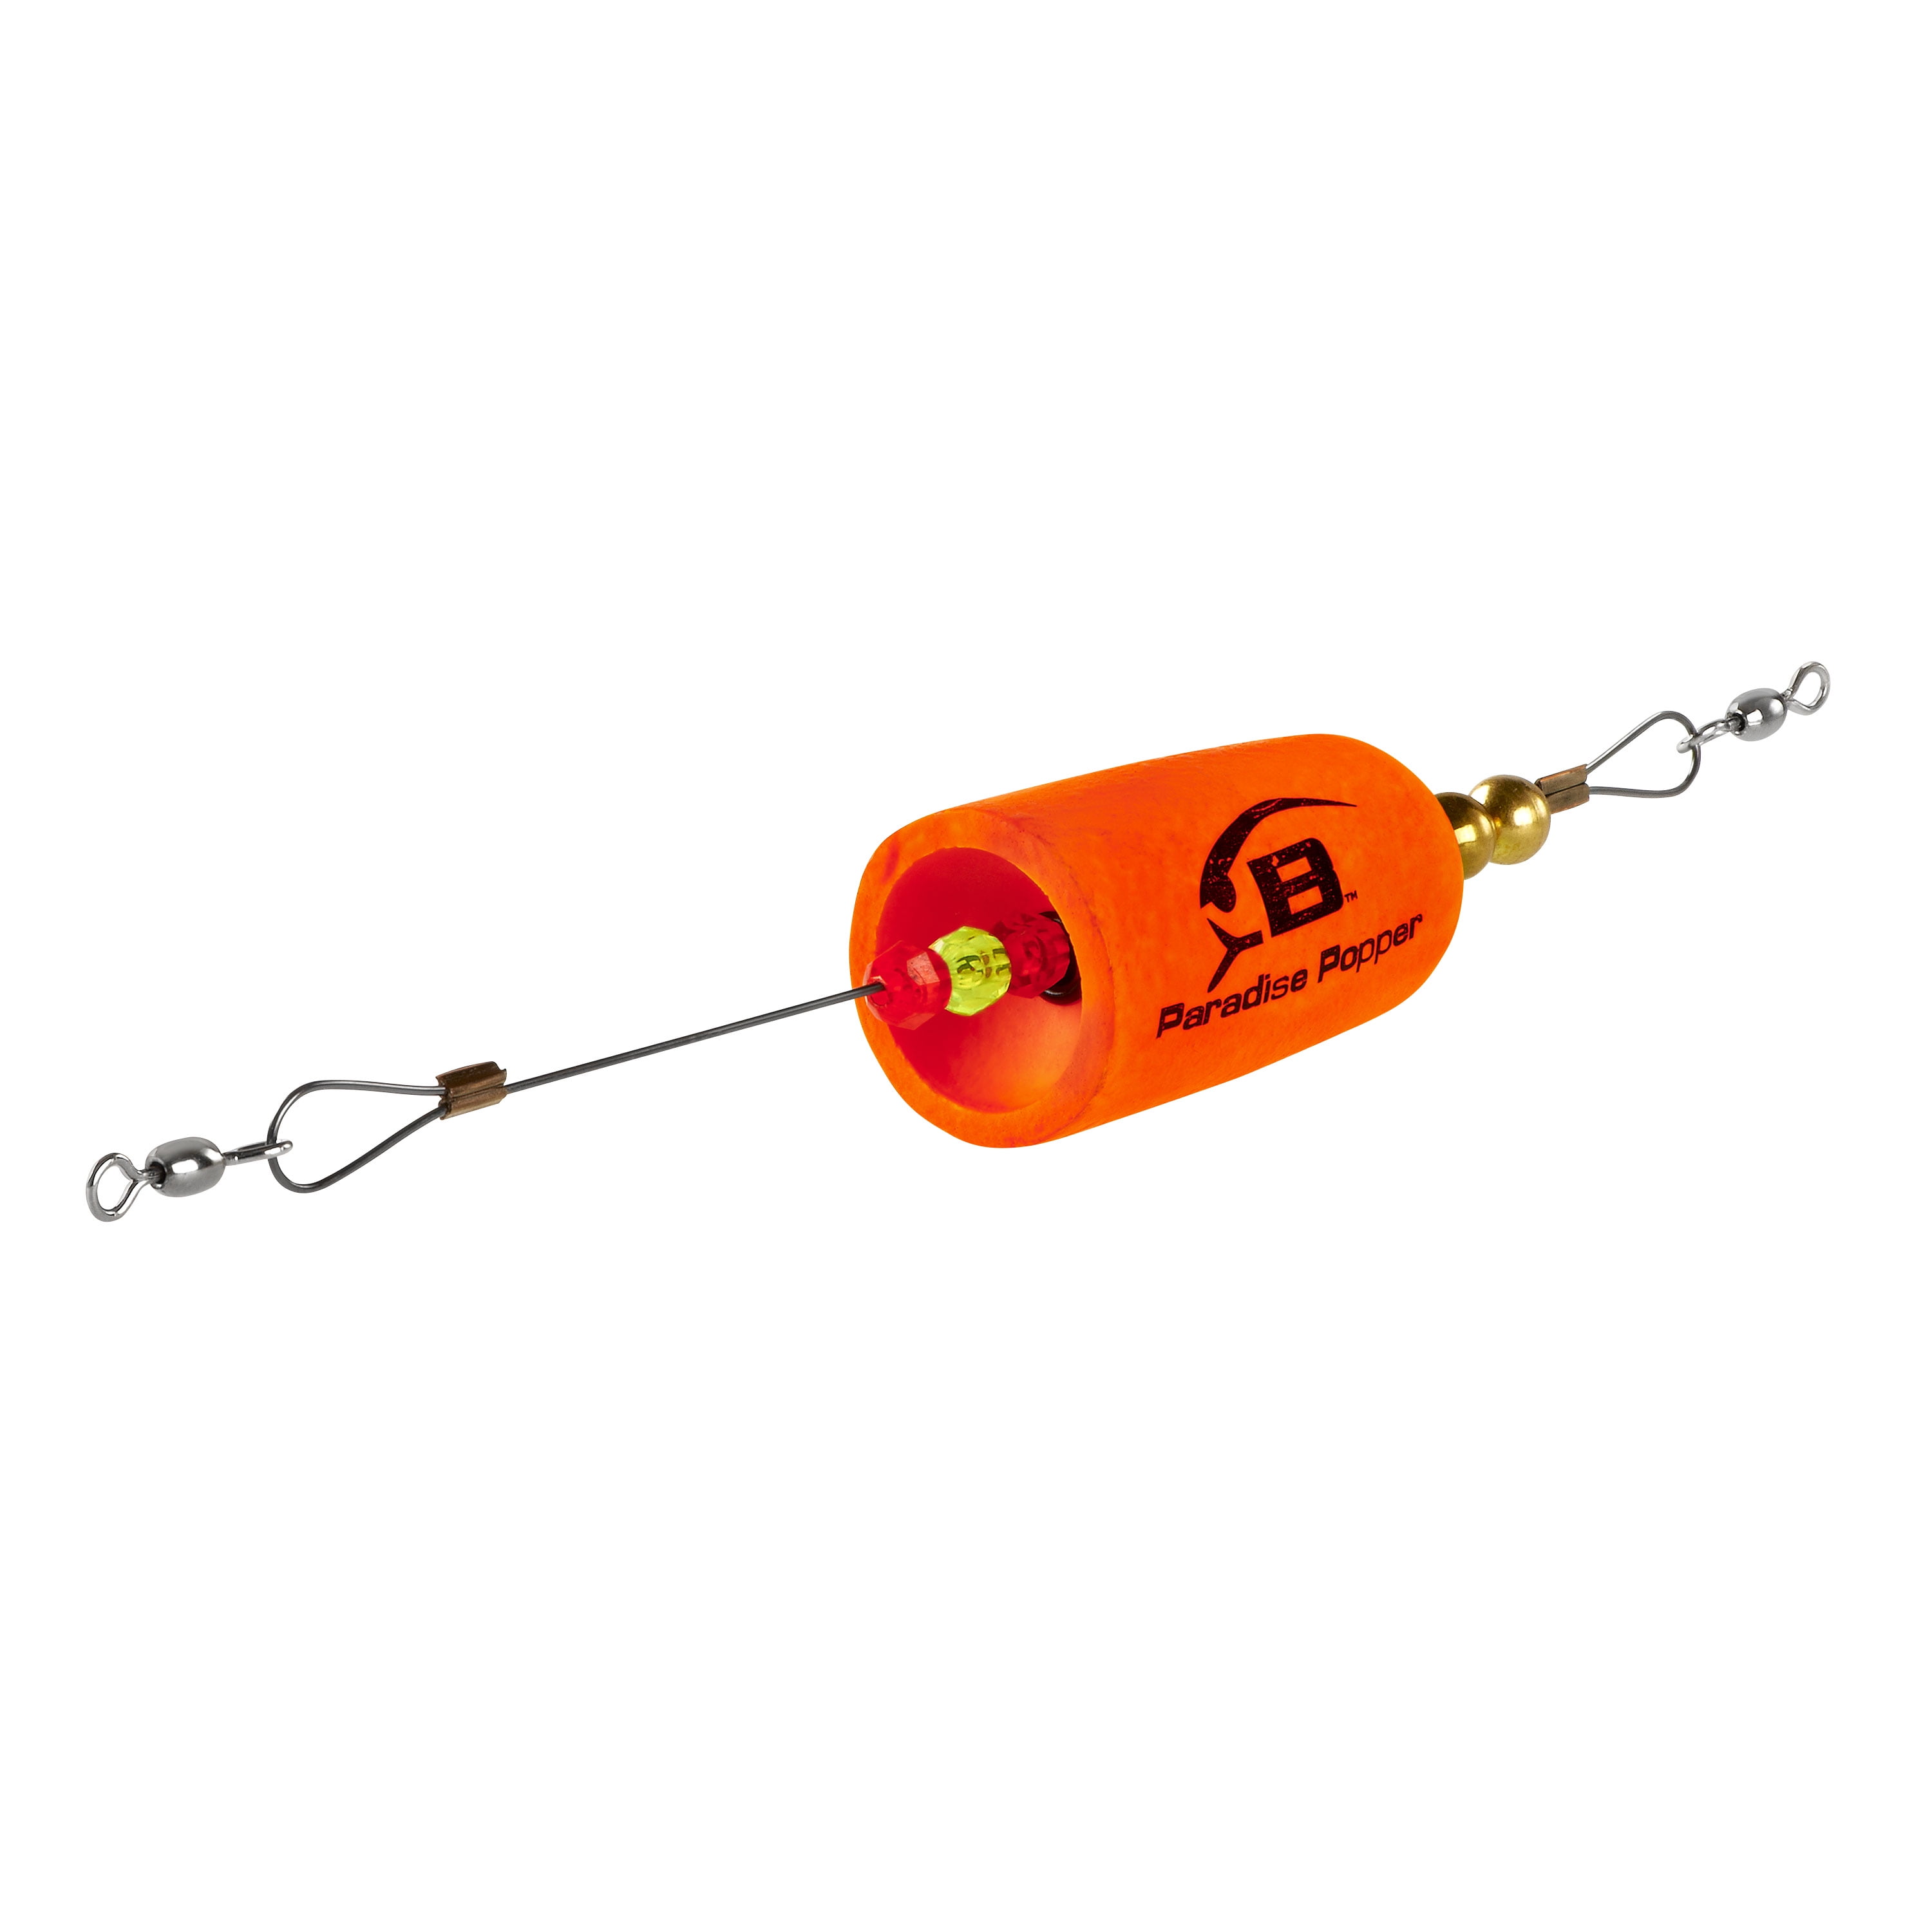 Bomber Paradise Popper X-Treme Fishing Float Rig Orange 3/4 oz